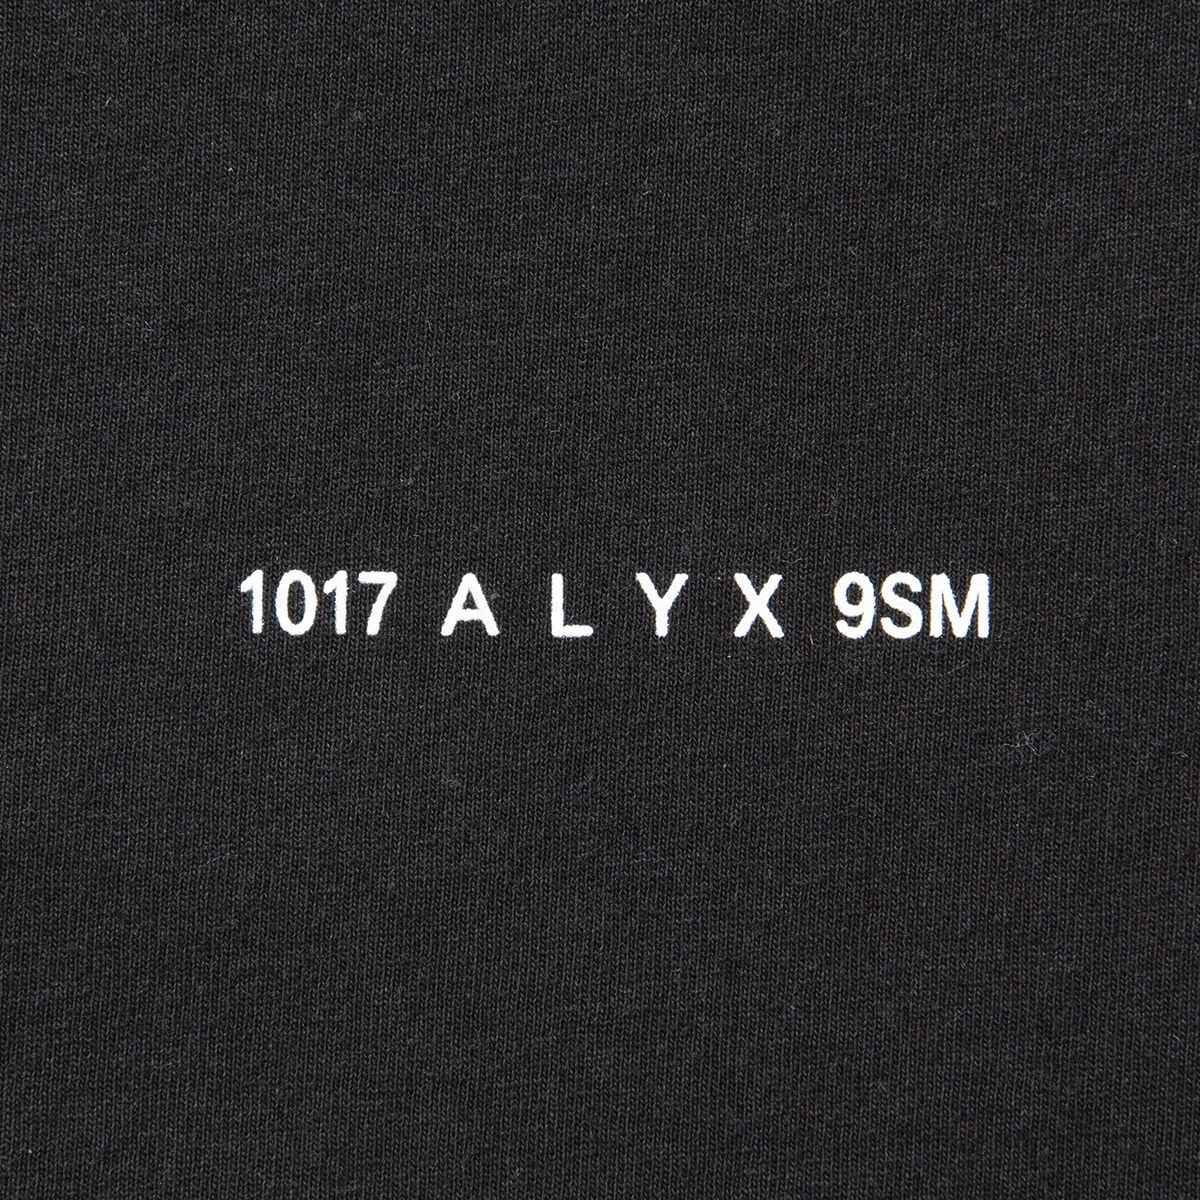 　◆新品◆モンクレール ジーニアス【Moncler Genius】MAGLIA T-shirt 半袖 Tシャツ 1017 ALYX 9SM ブラック サイズ：M 8C71340